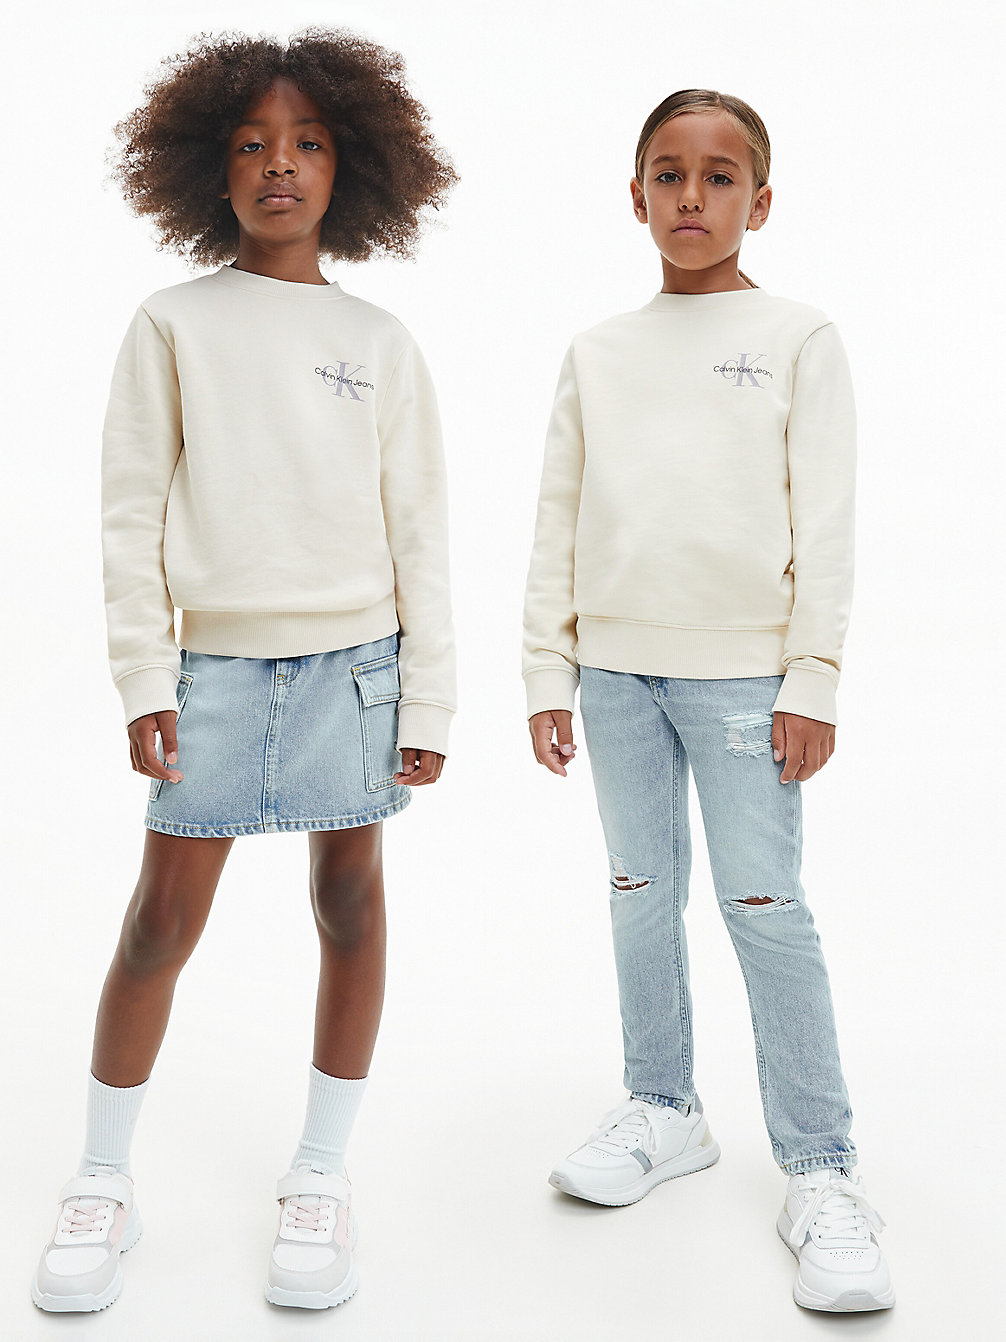 MUSLIN Unisex Sweatshirt undefined kids unisex Calvin Klein